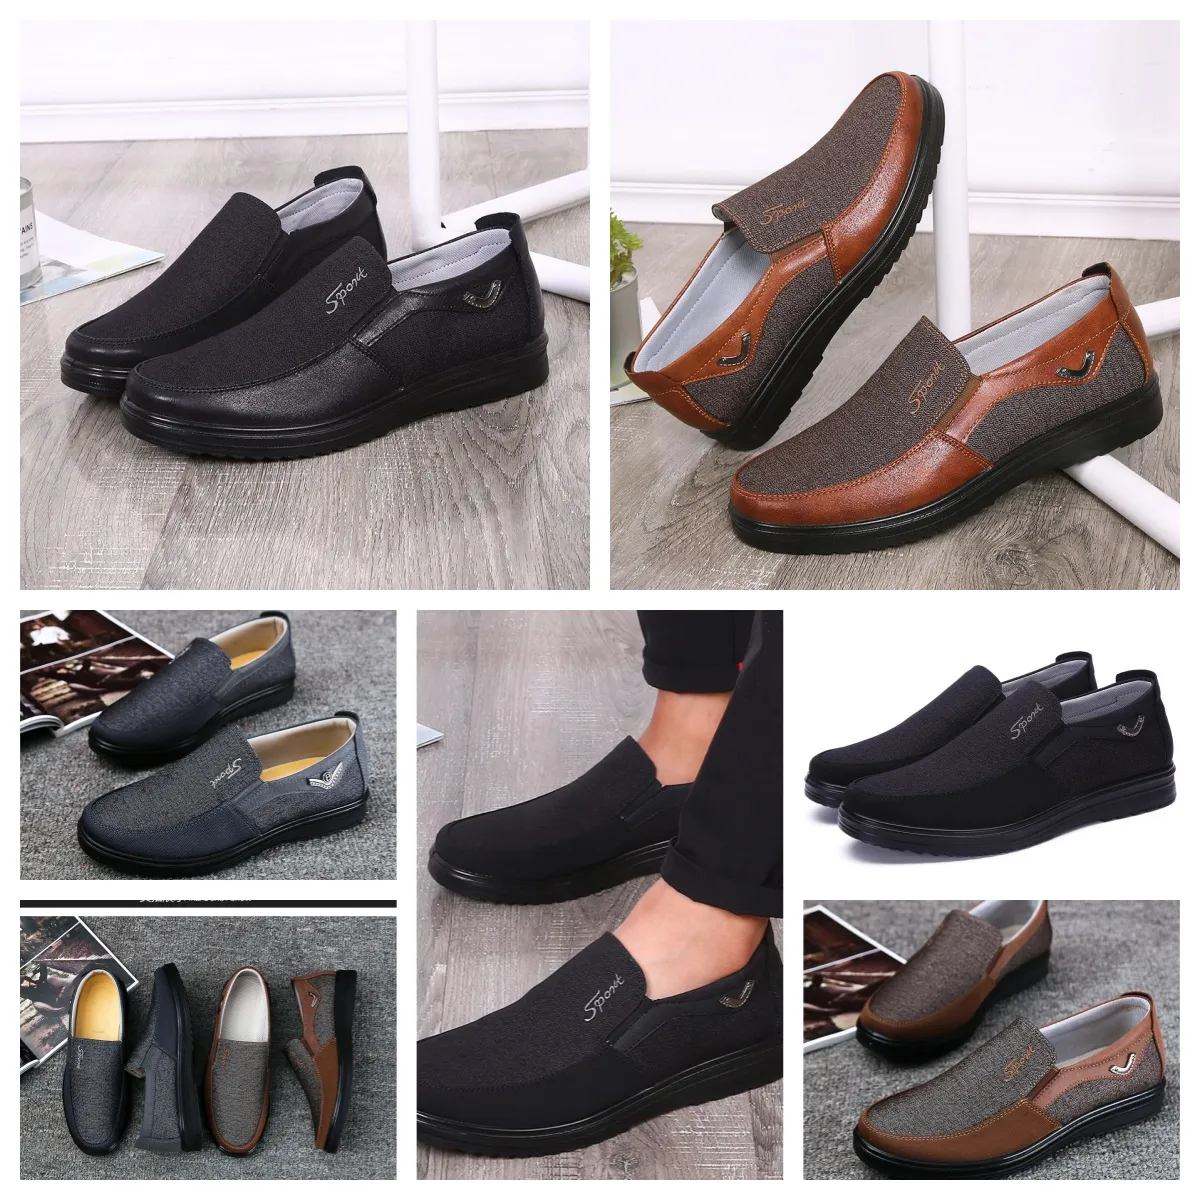 Chaussure GAI sneaker chaussure décontractée hommes célibataires affaires bouts ronds chaussures décontractées semelles souples pantoufle plat hommes chaussures de confort classiques tailles souples EUR 38-50